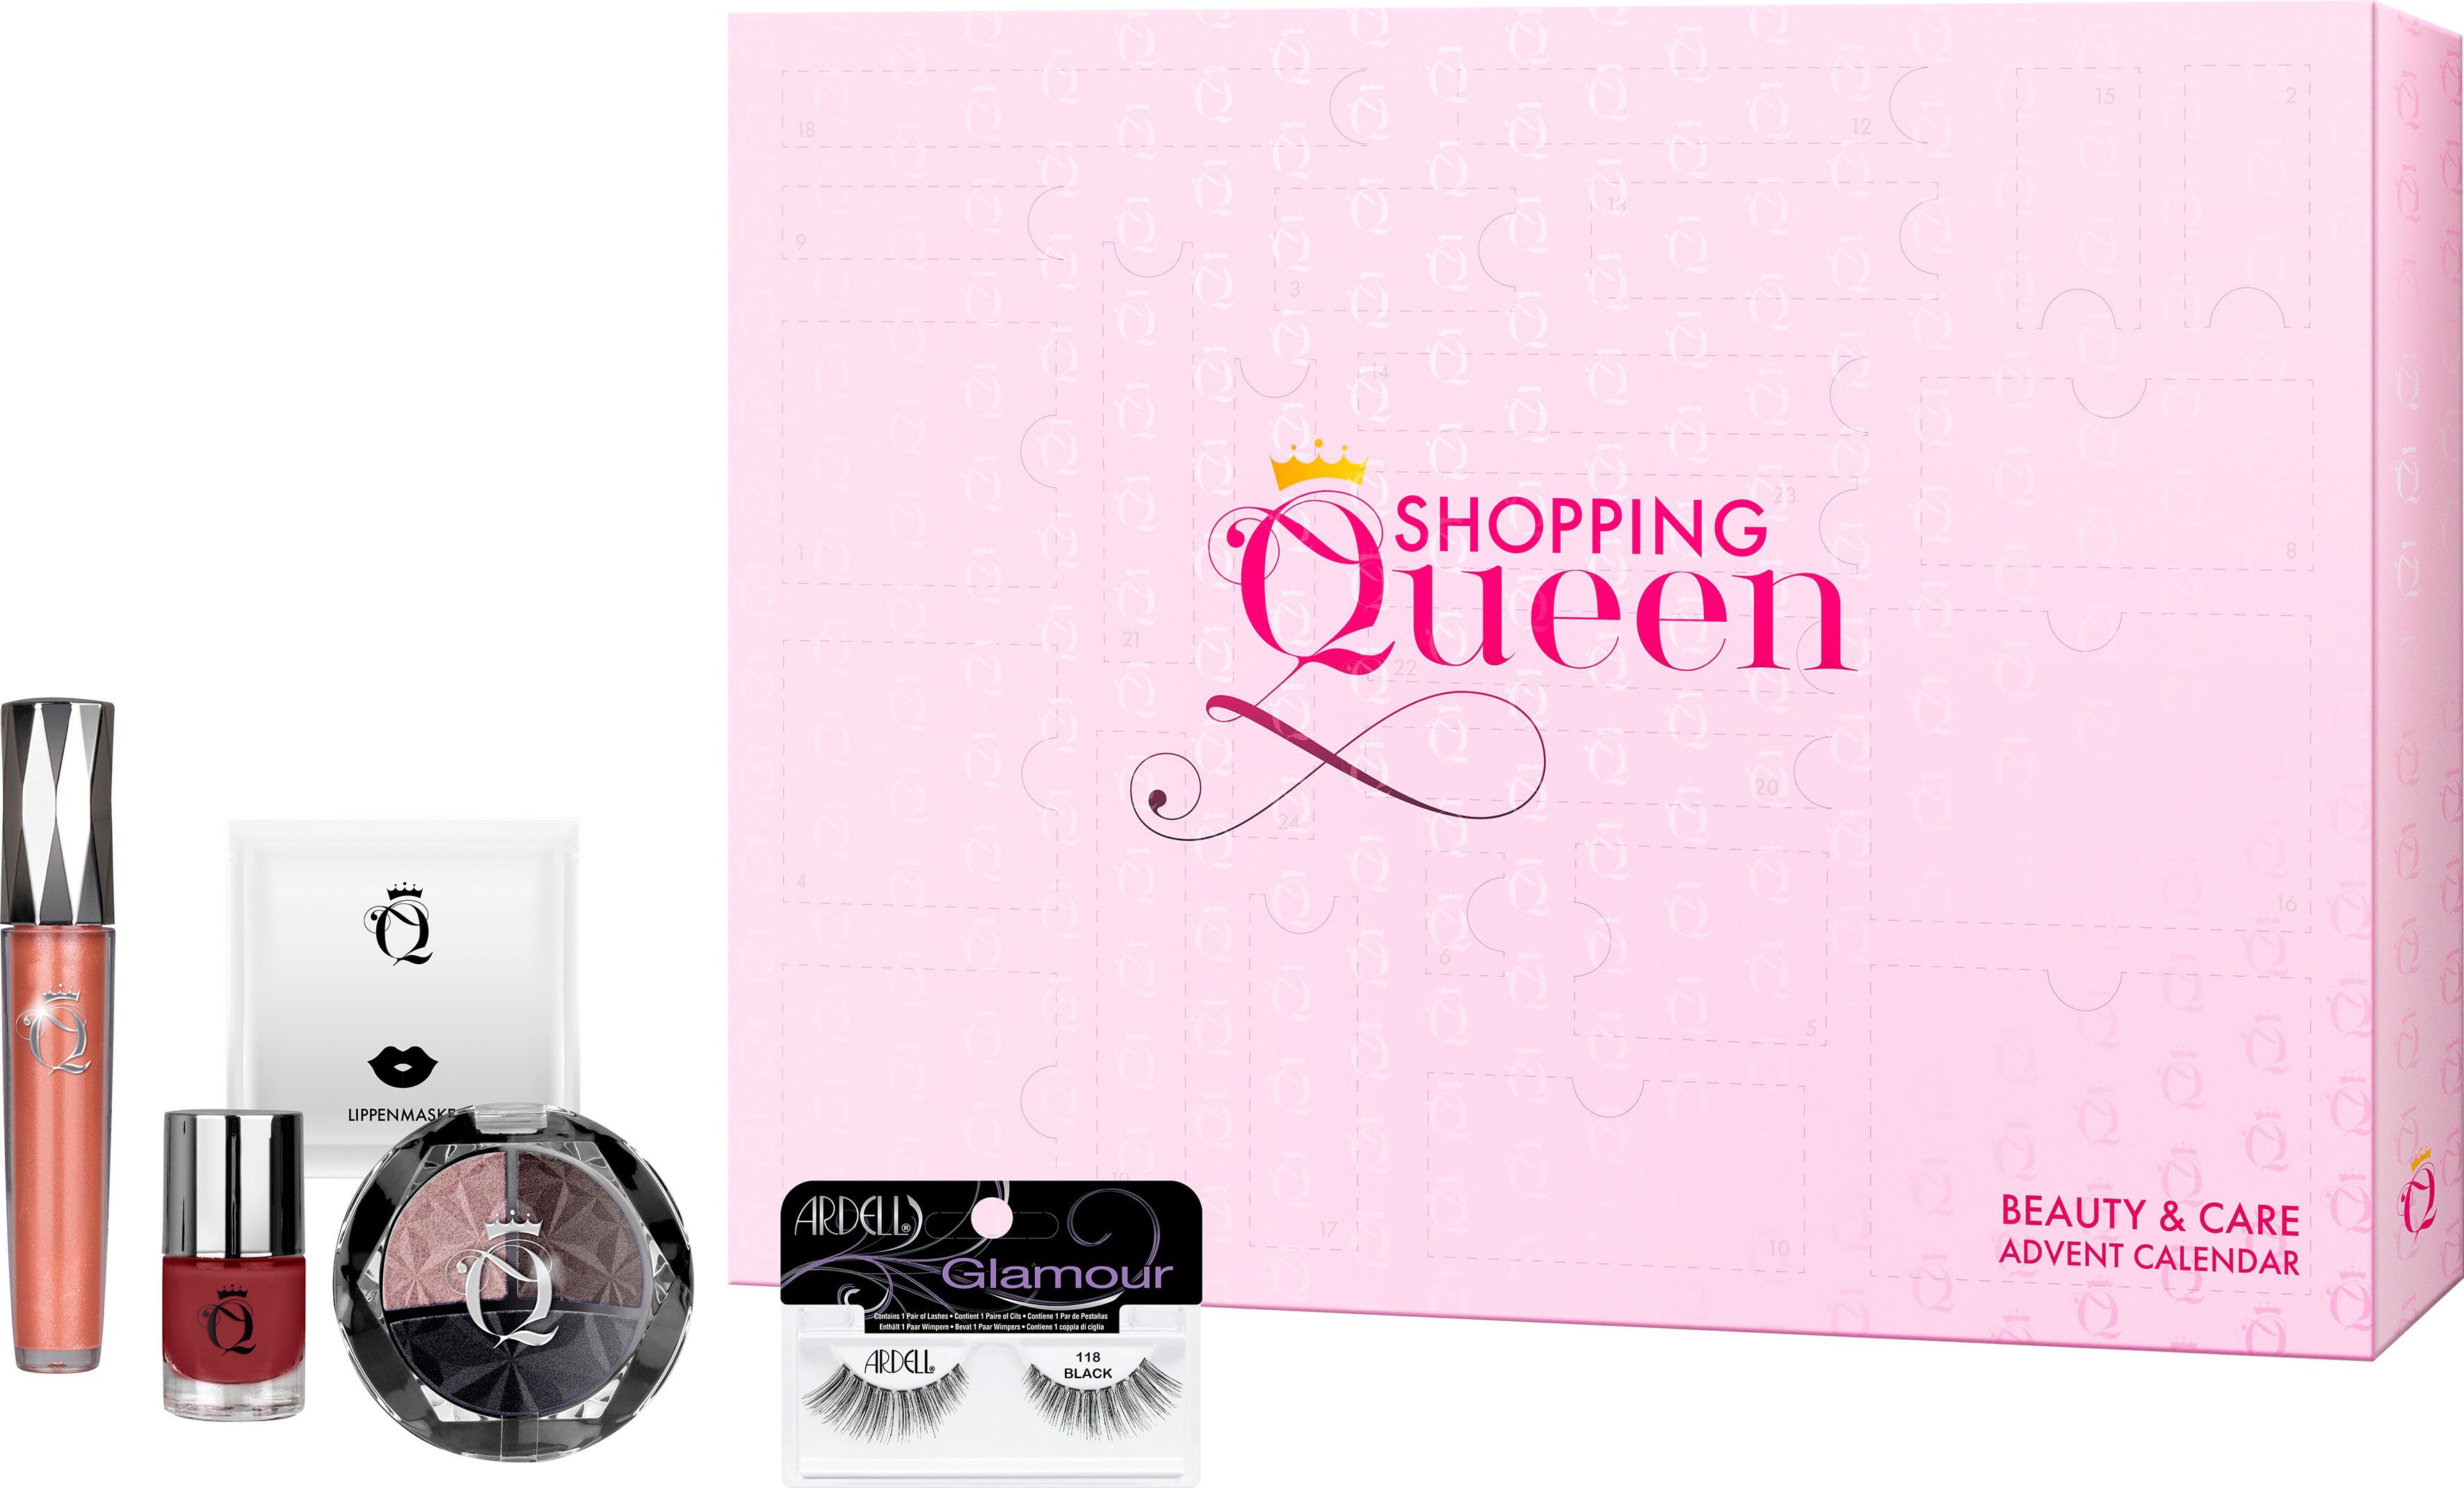 Shopping Queen ARDELL Shopping meets Adventskalender Queen